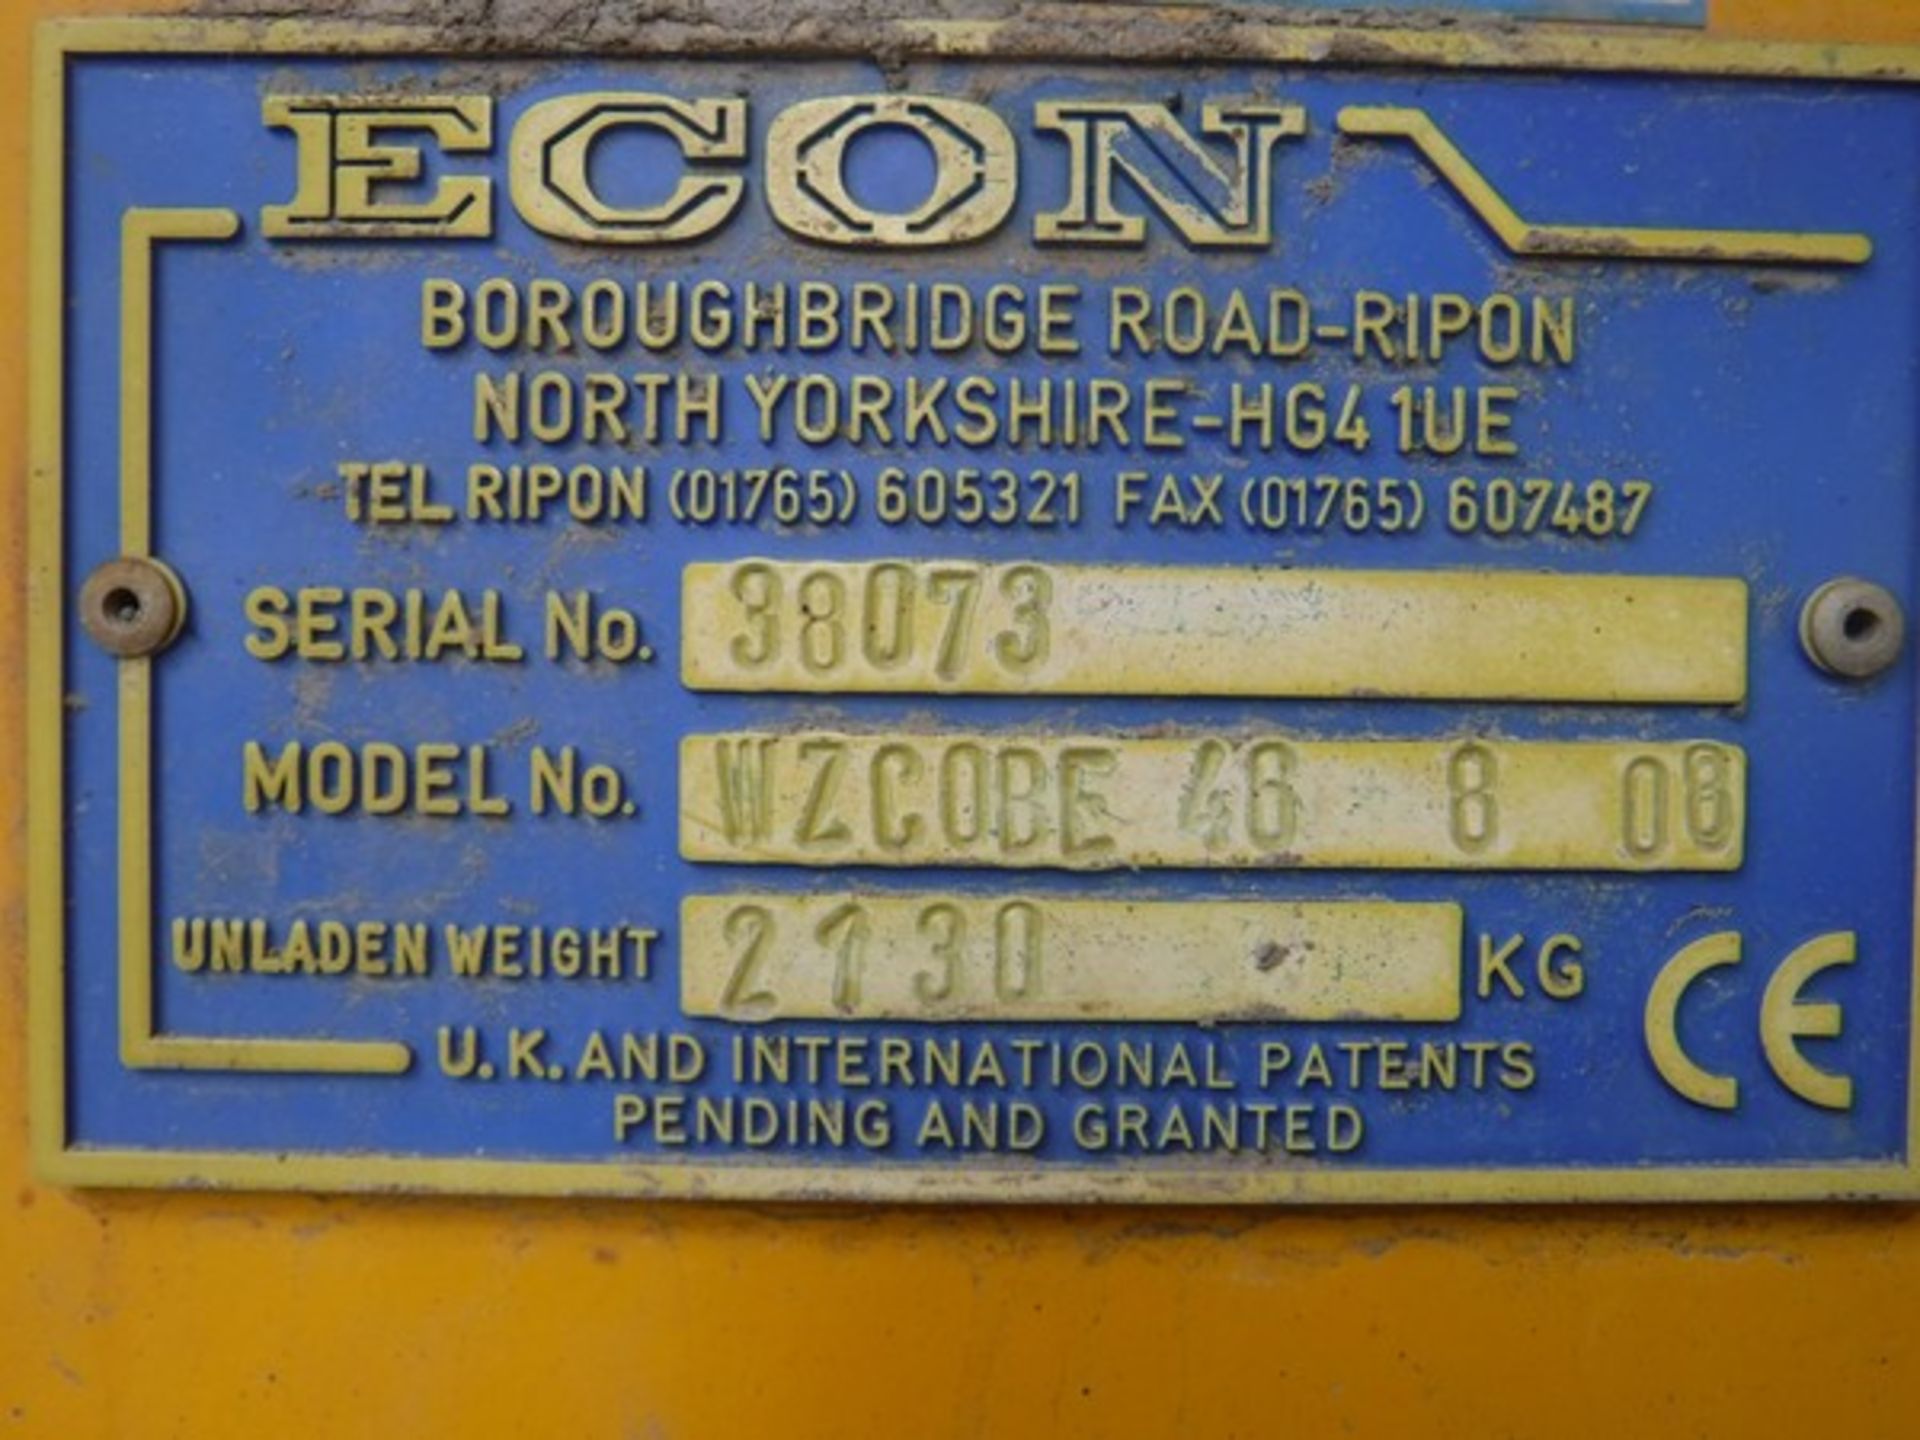 2008 ECON WZCOBE46 - 6 cu.m demountable gritter body c/w Hatz diesel engine s/n 38073 - Bild 7 aus 7